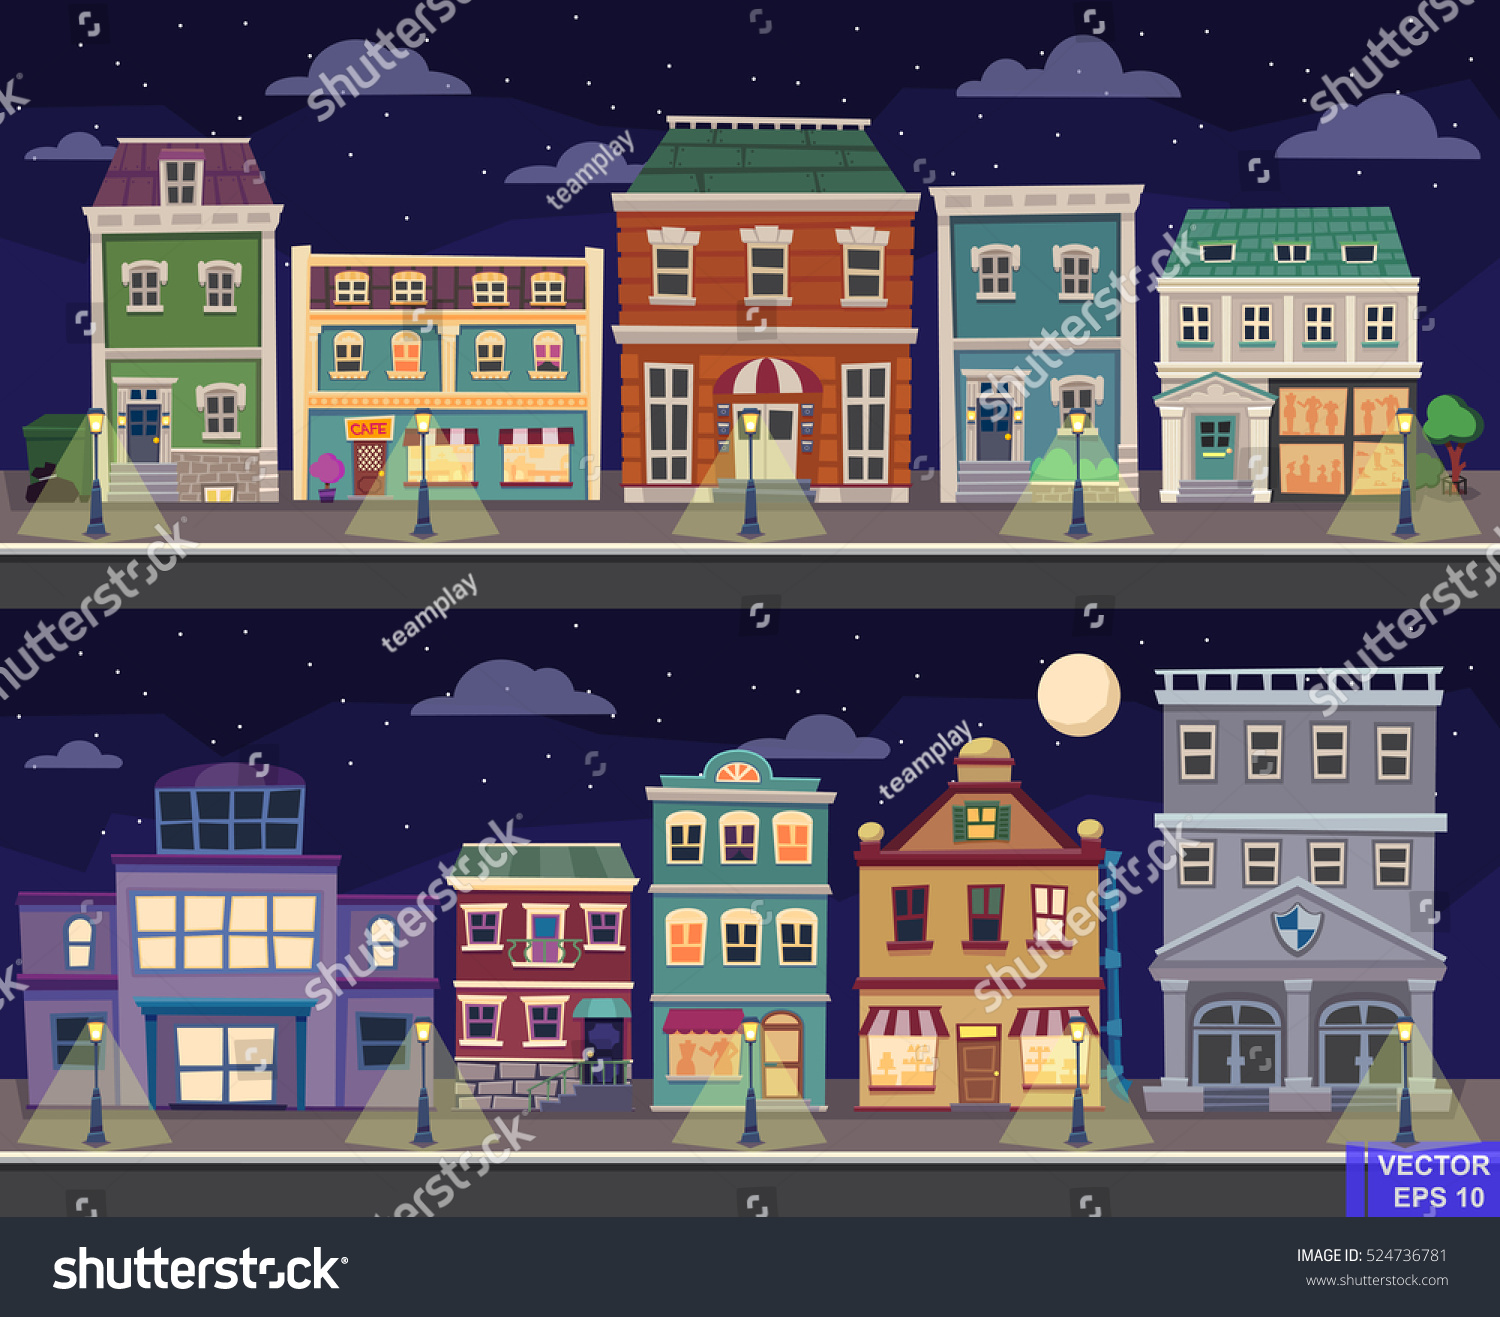 レトロなベクターイラストの街並みが風景に見えます 夜の町並み のベクター画像素材 ロイヤリティフリー